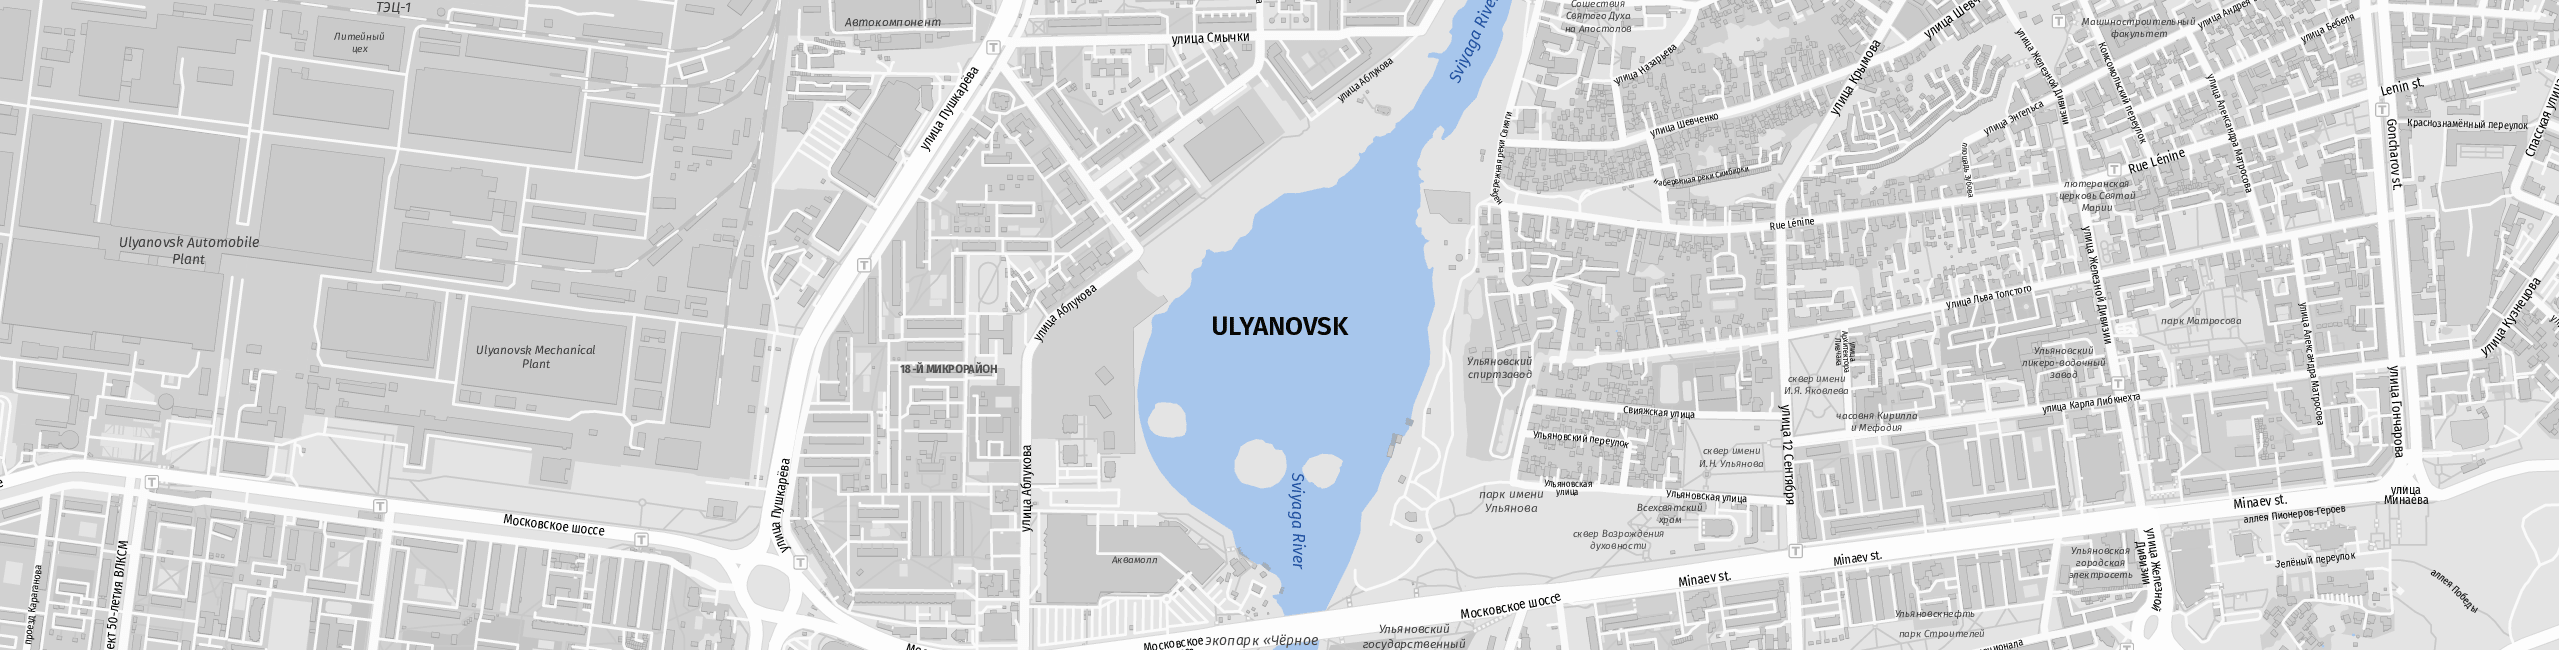 Stadtplan Uljanowsk zum Downloaden.